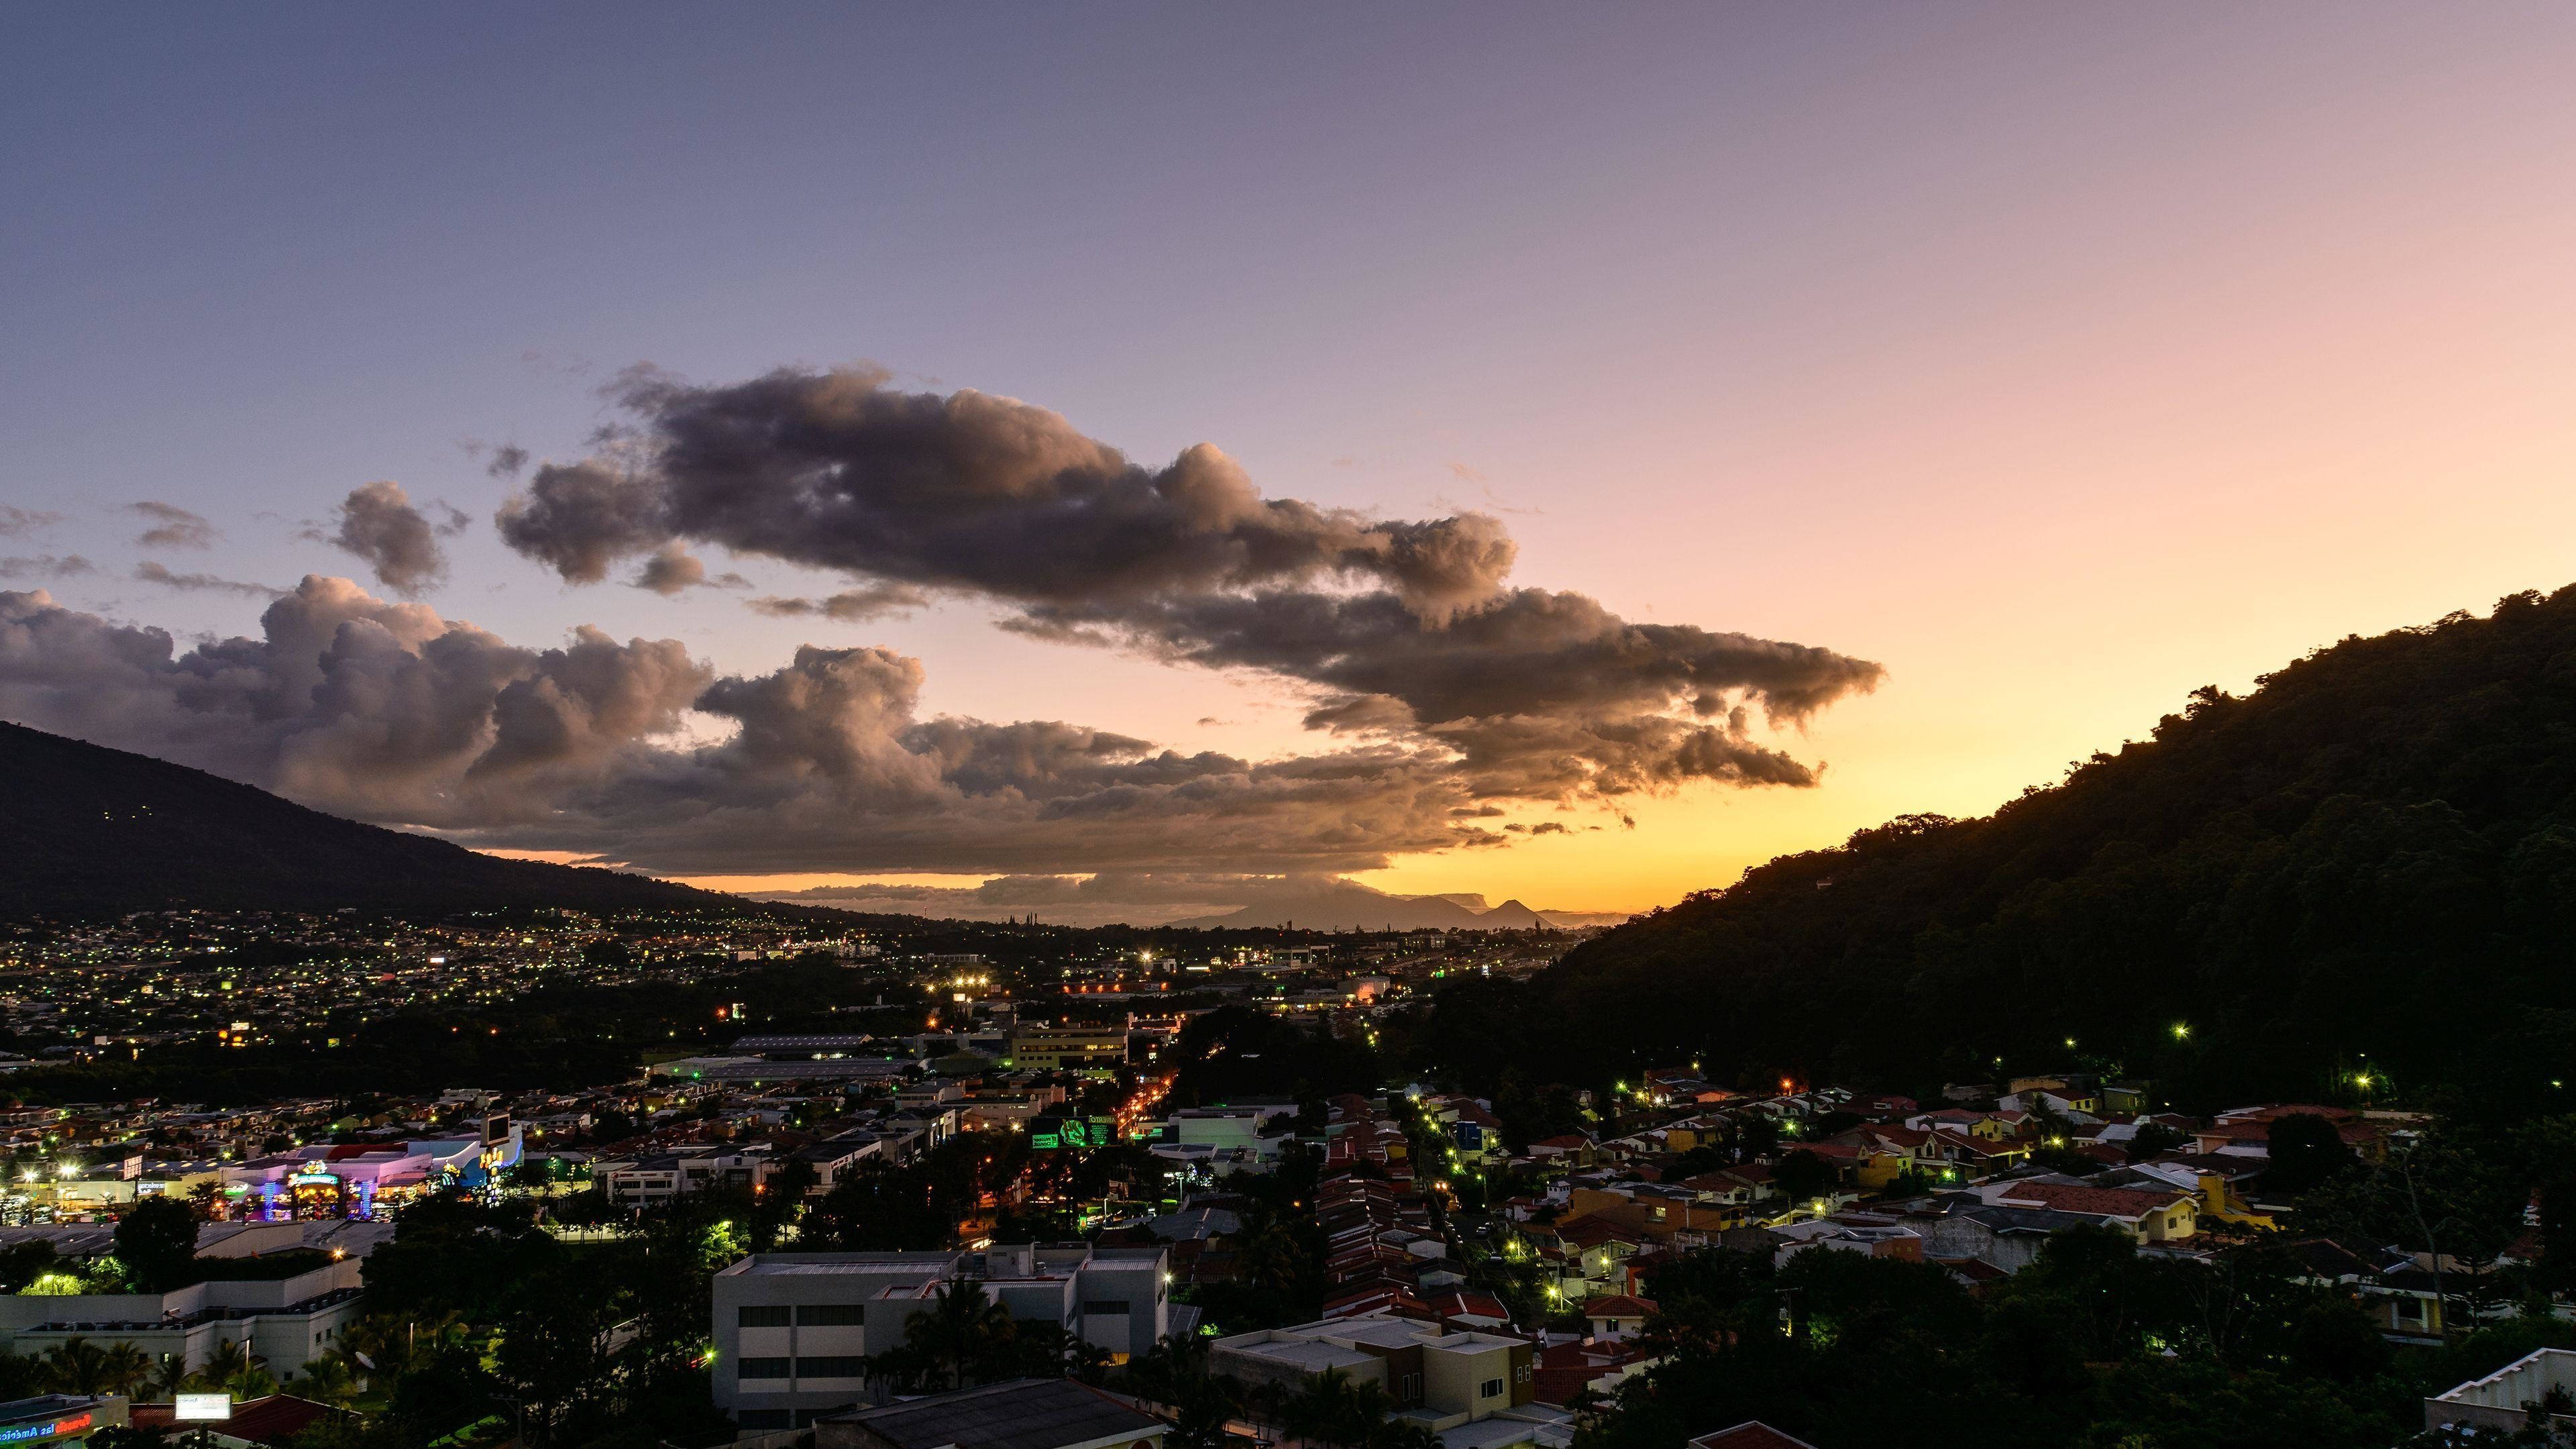 3840x2160 San Salvador after the sunset